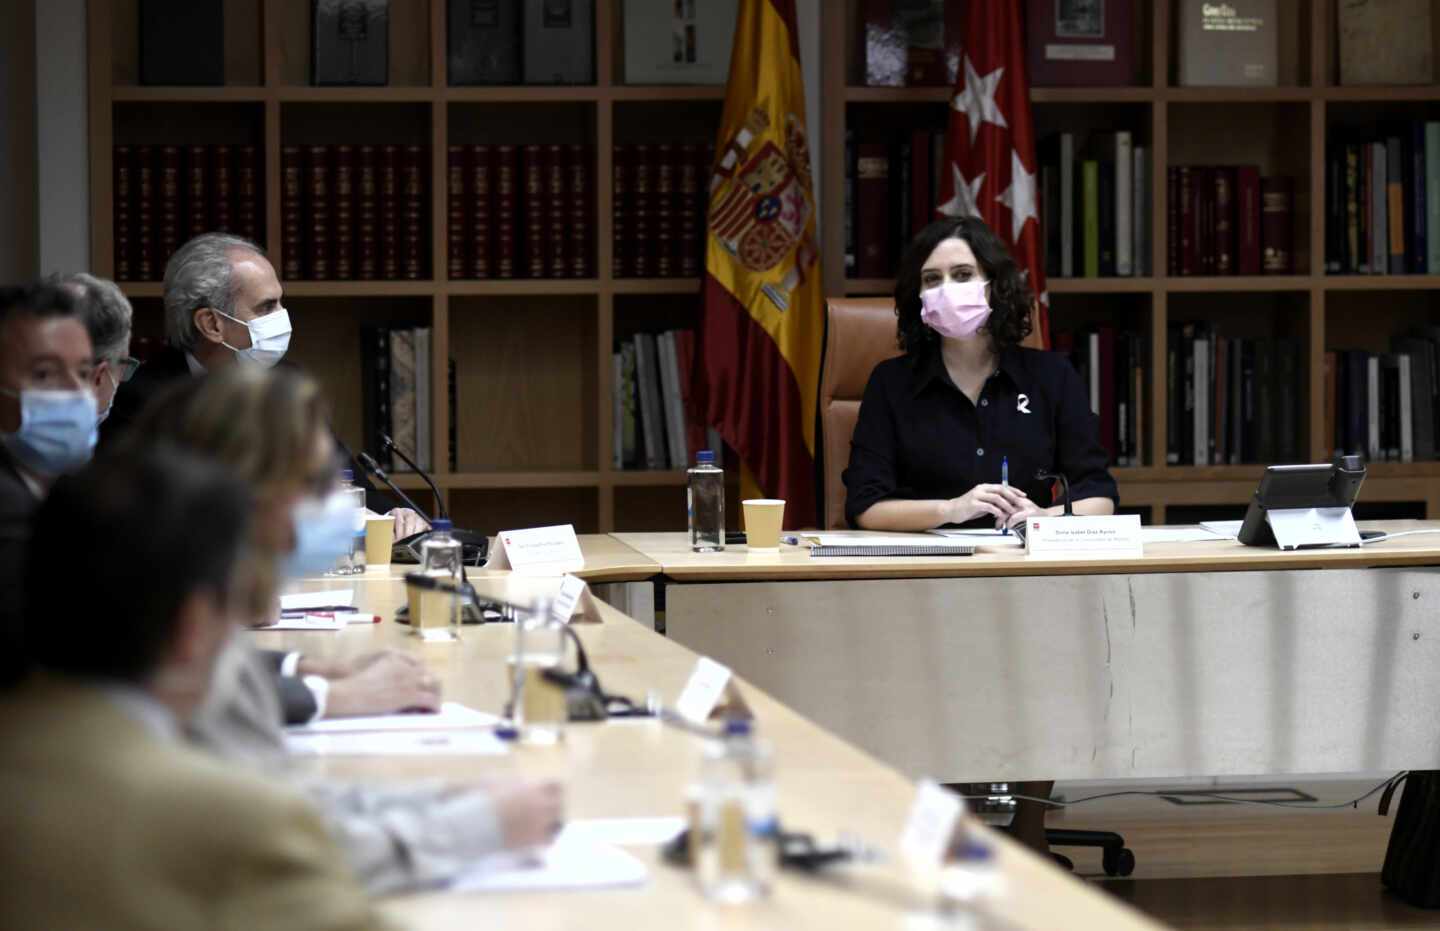 Ruiz Escudero y Díaz Ayuso, en una reunión de la Comunidad de Madrid.